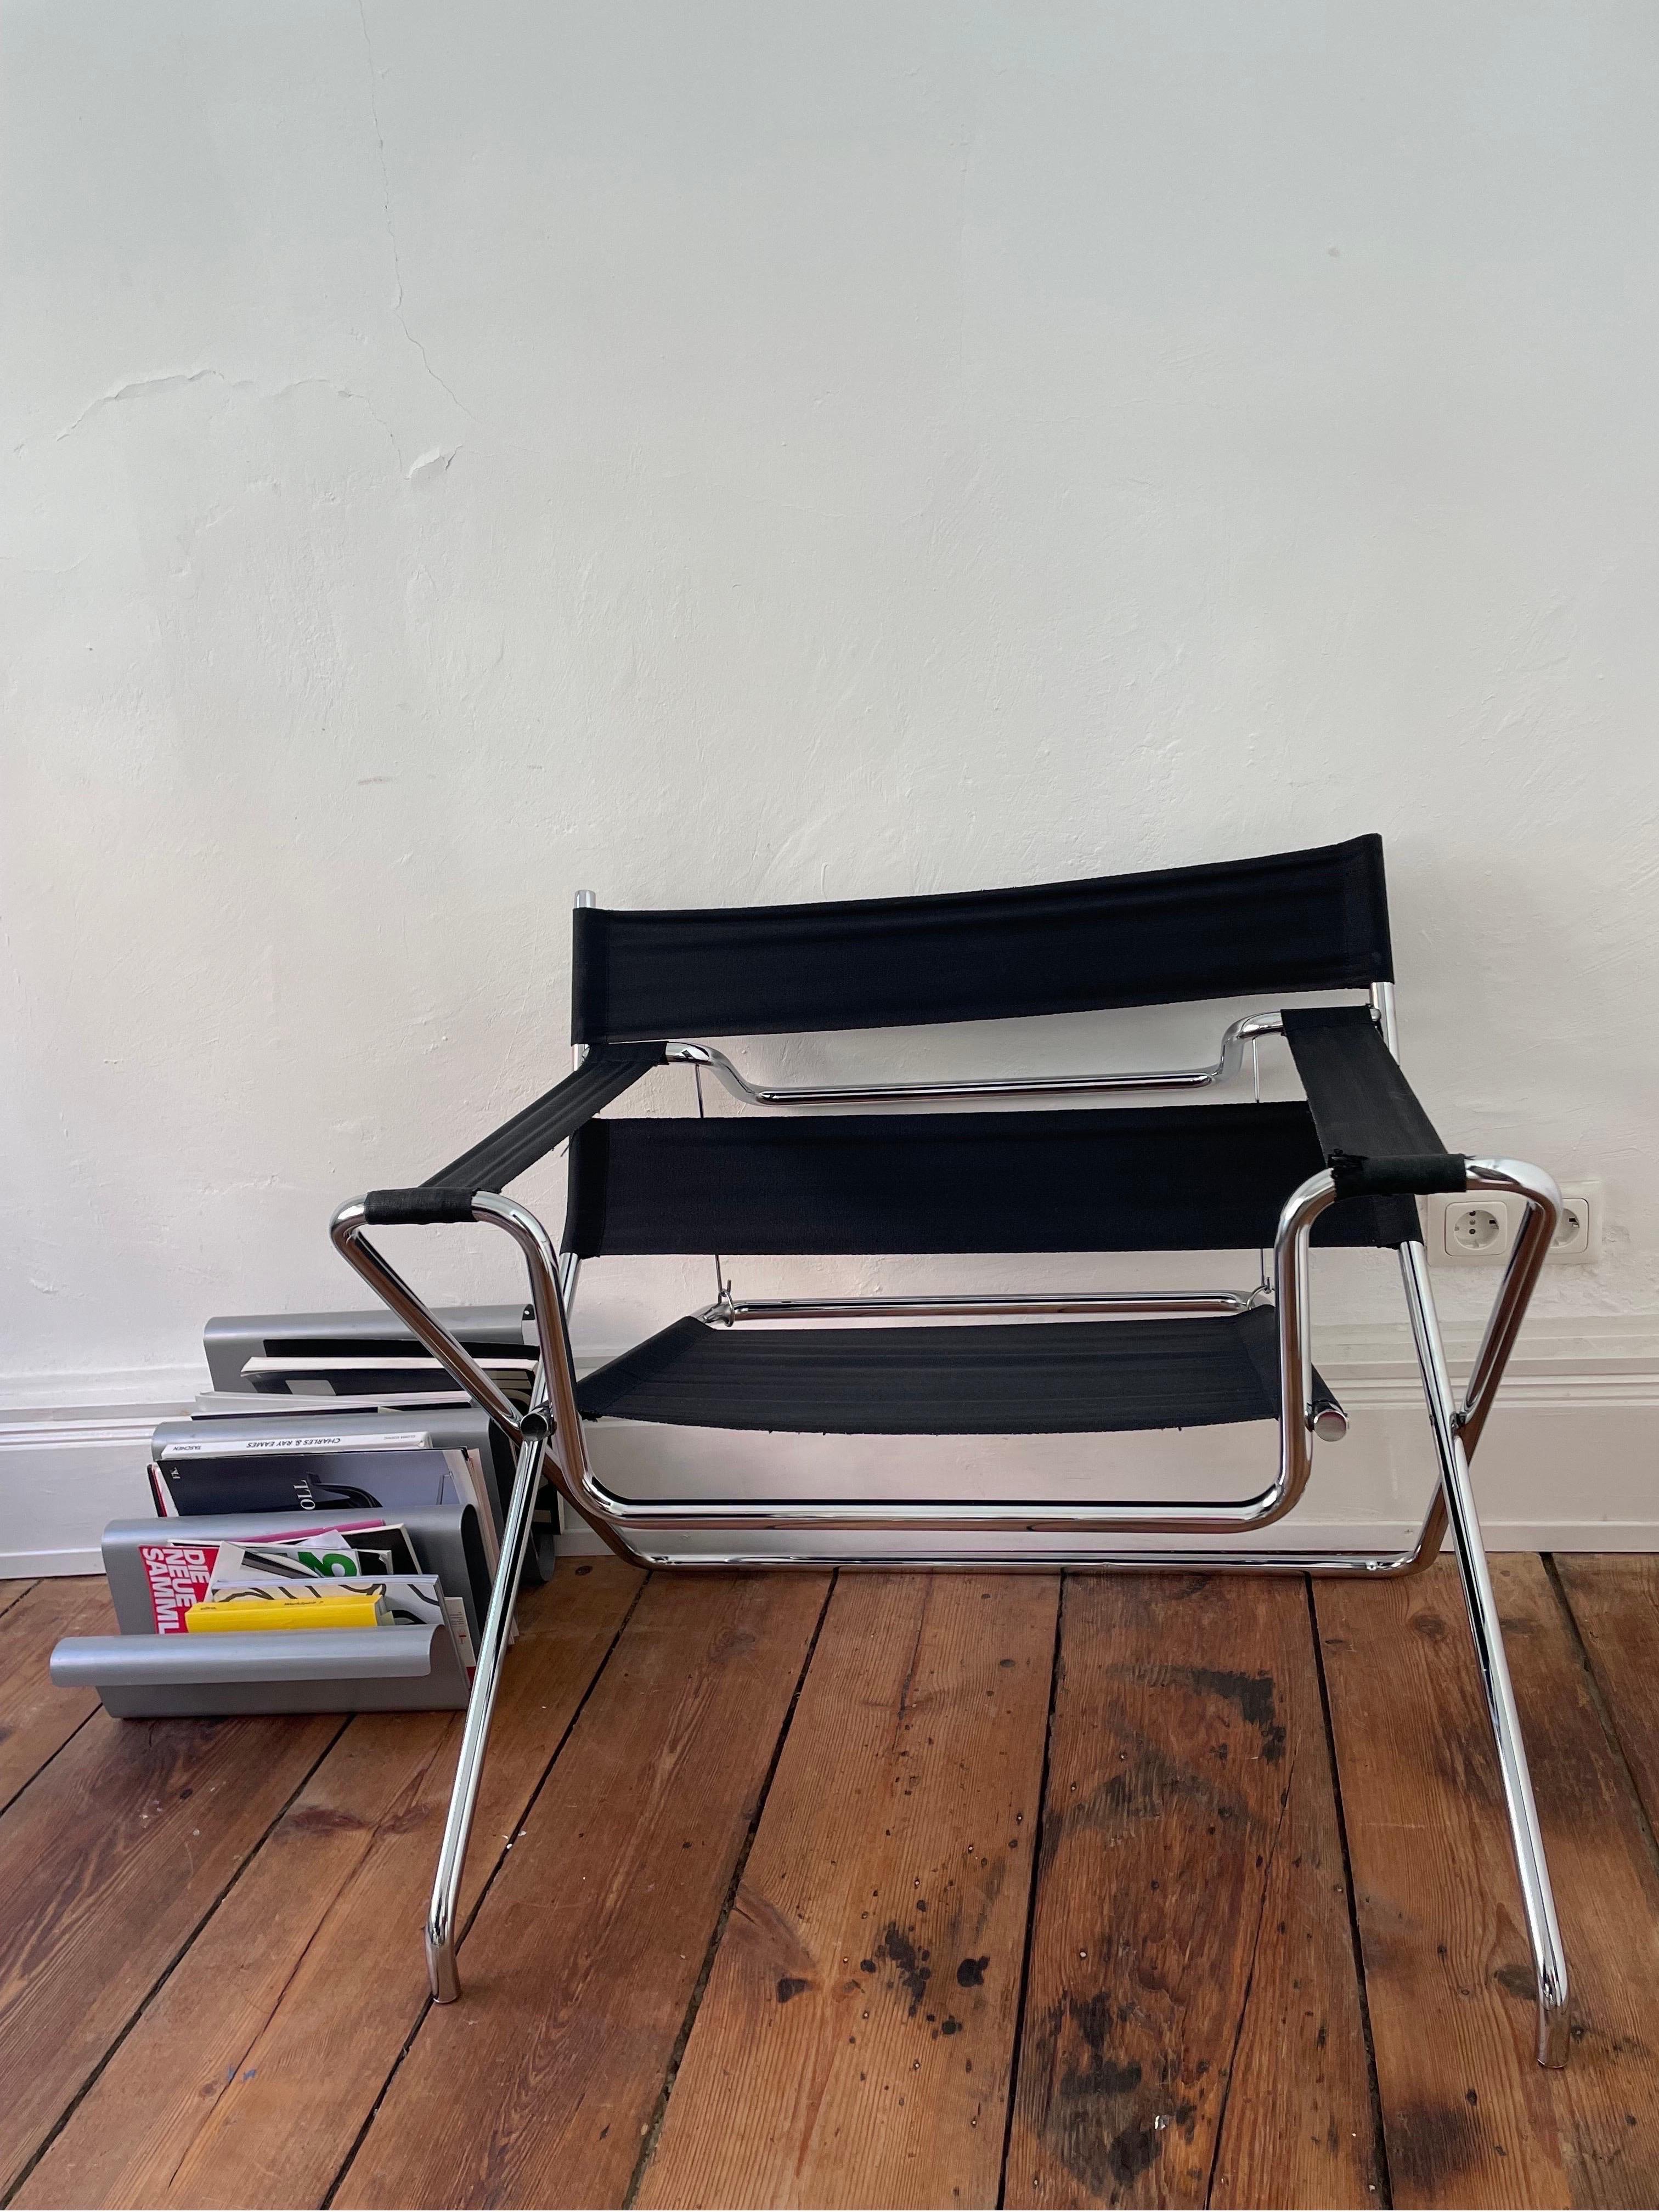 Der D4 chair von Marcel Breuer für Tecta ist nicht zu unrecht einer der bekanntesten Bauhaus Klassiker überhaupt. Und deshalb erfüllt es mich mit Stolz euch diesen zu 100% originalen Sessel vorzustellen. 

Dieses zeitlose Meisterwerk überzeugt mit